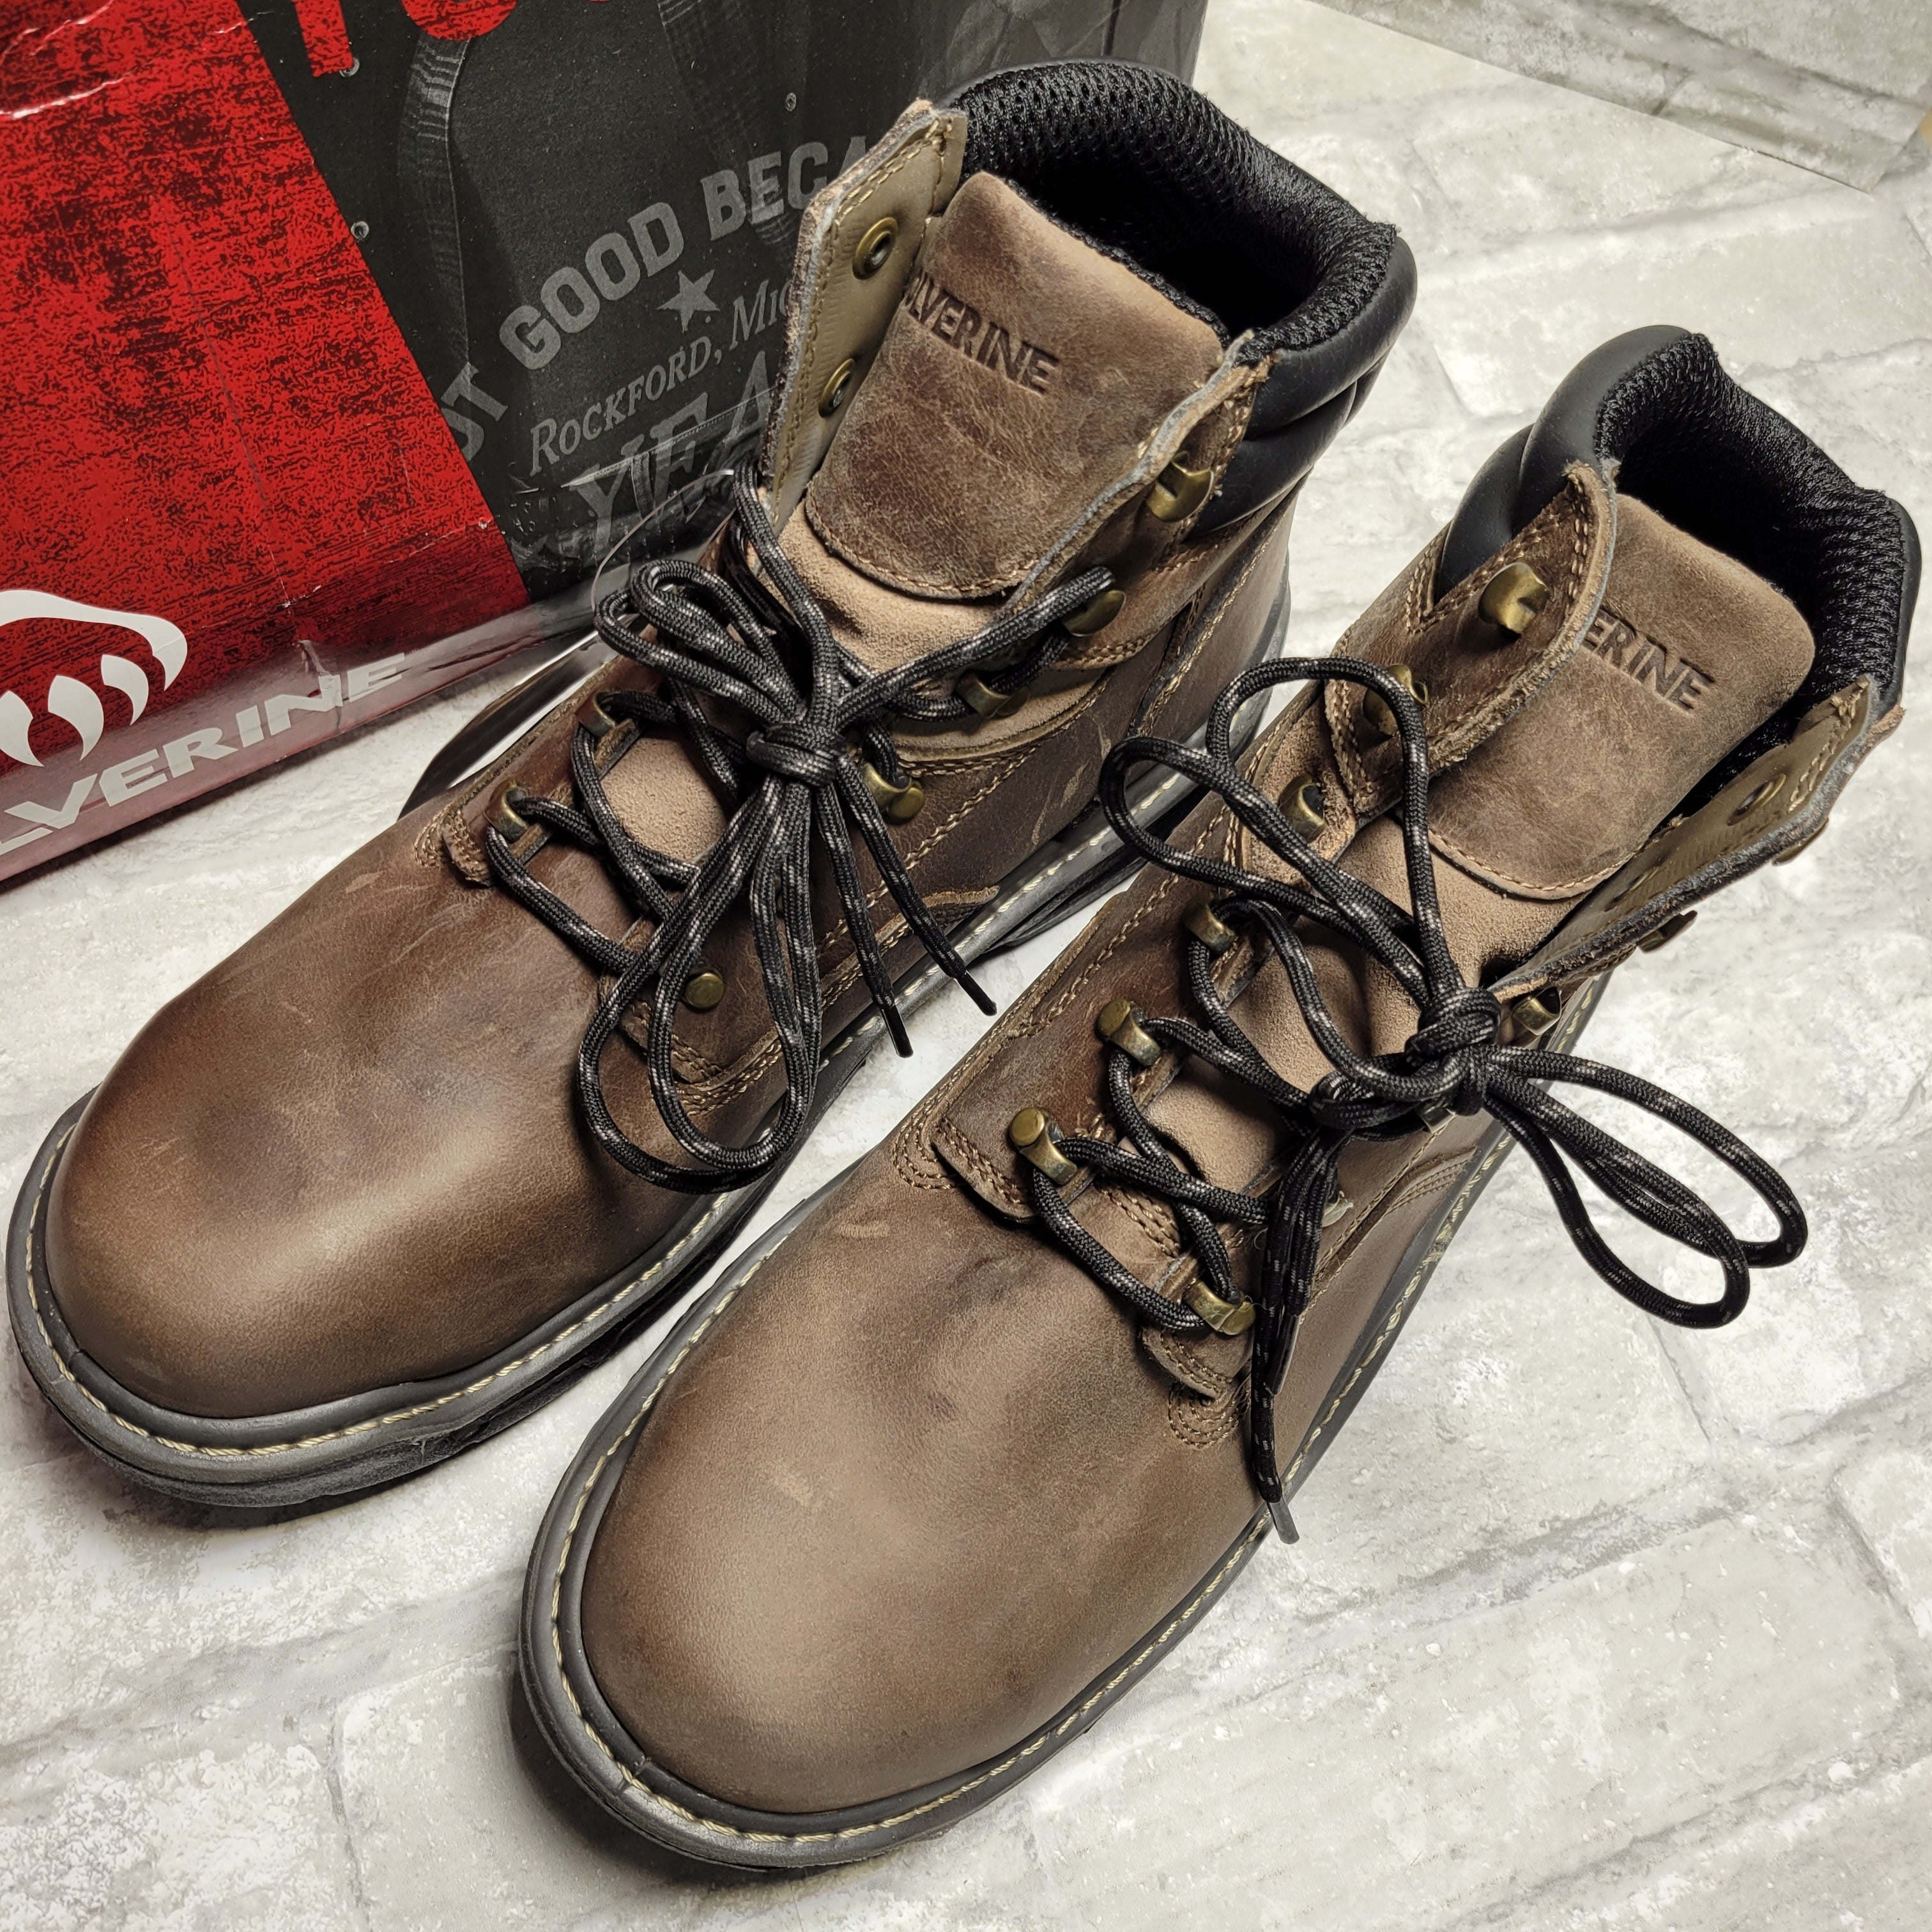 WOLVERINE Men's Raider DuraShocks 6 Inch Composite Toe Construction Boot, 10EW (8037902942446)